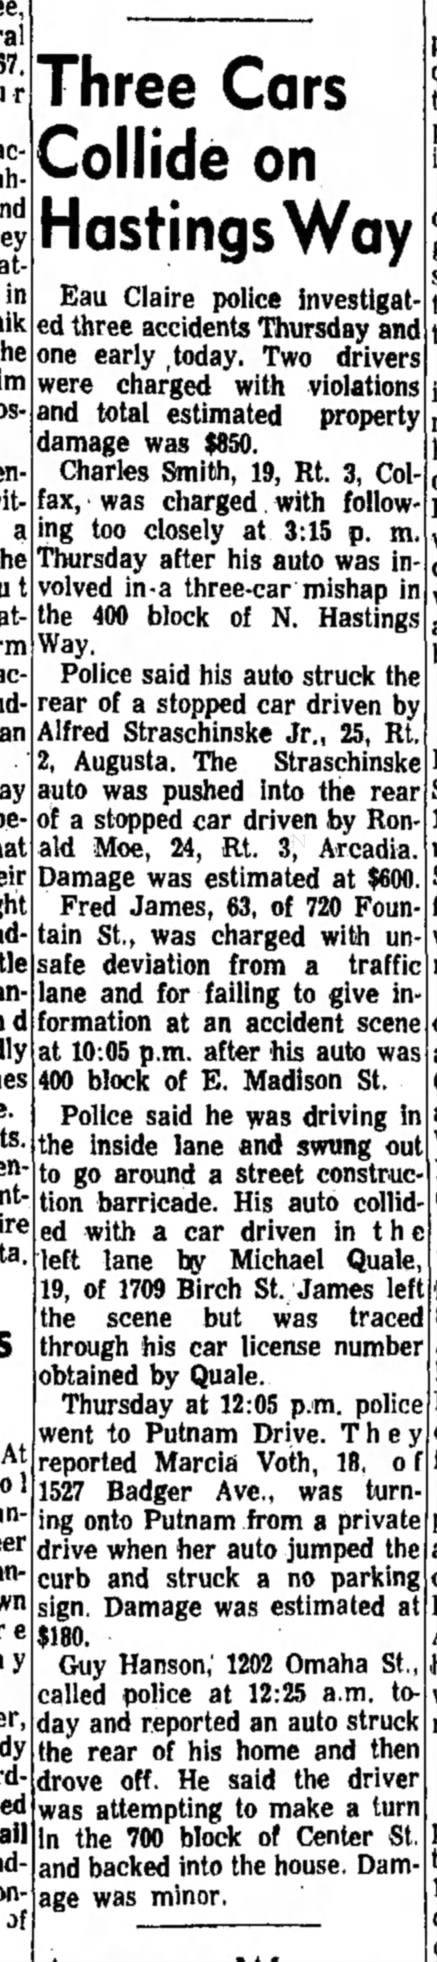 Alfred Straschinske Jr. car accident 
